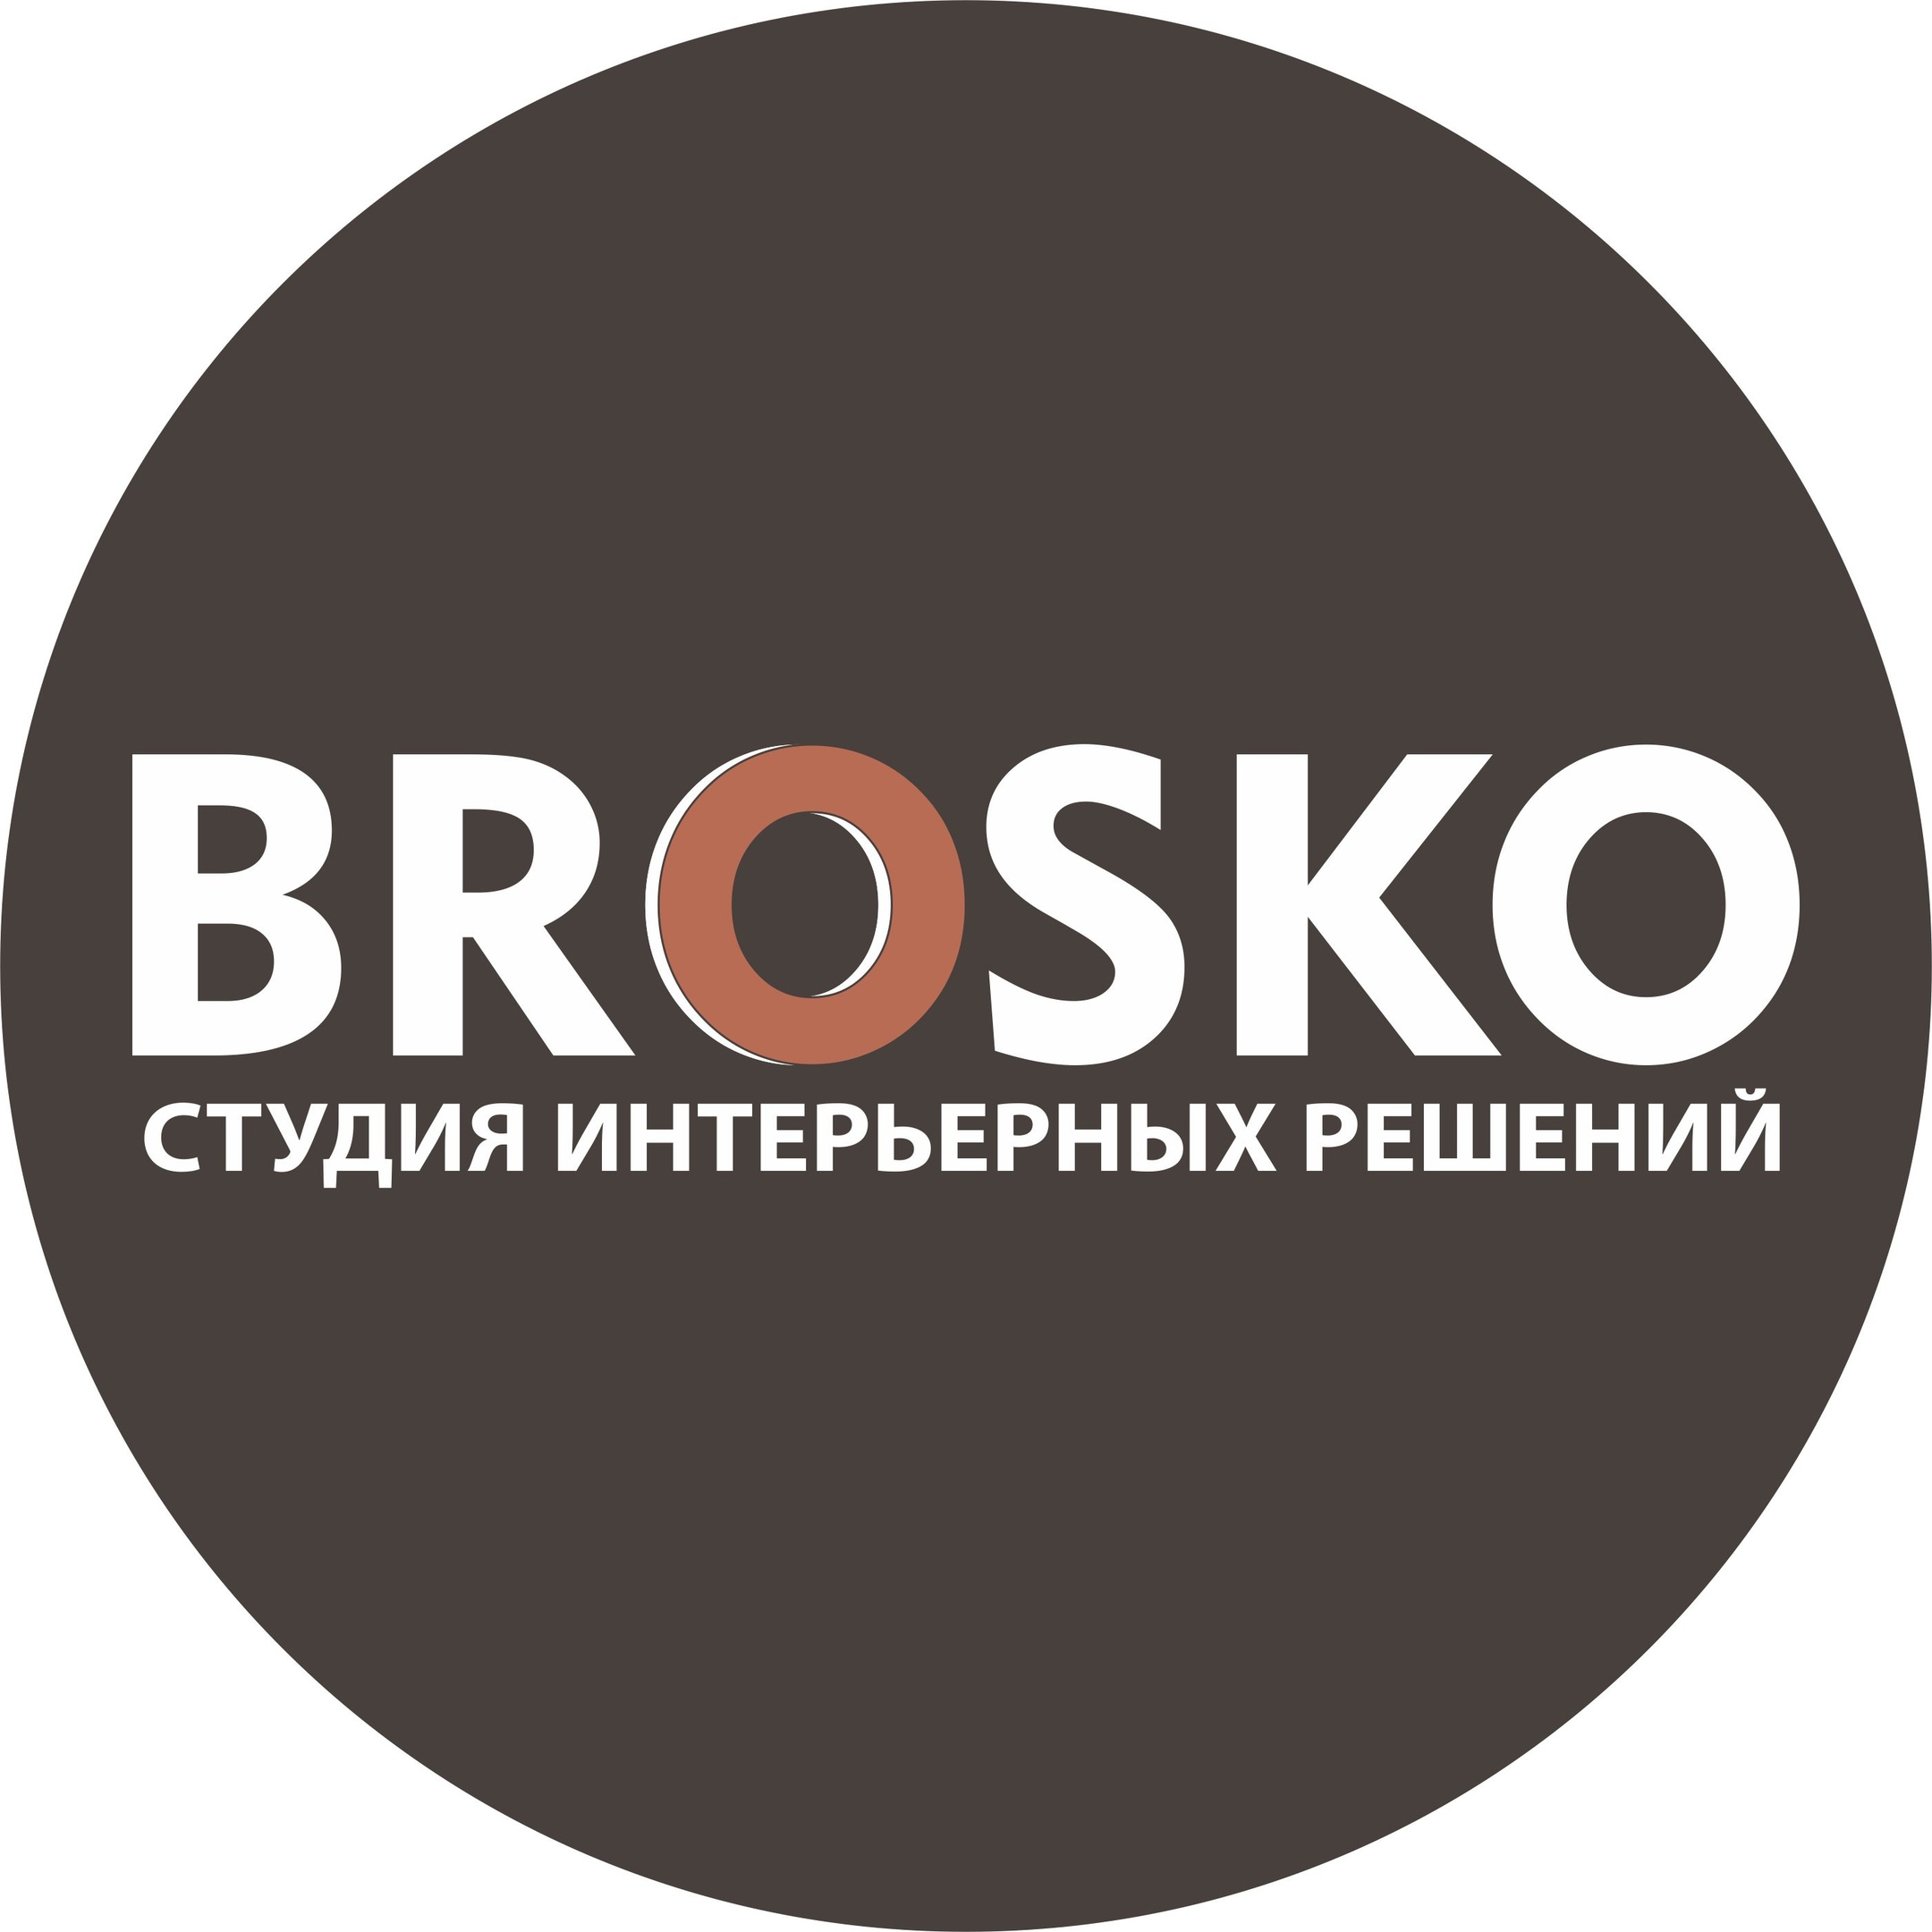 Студия интерьерных решений BROSKO стала партнером выставки ArhDialog